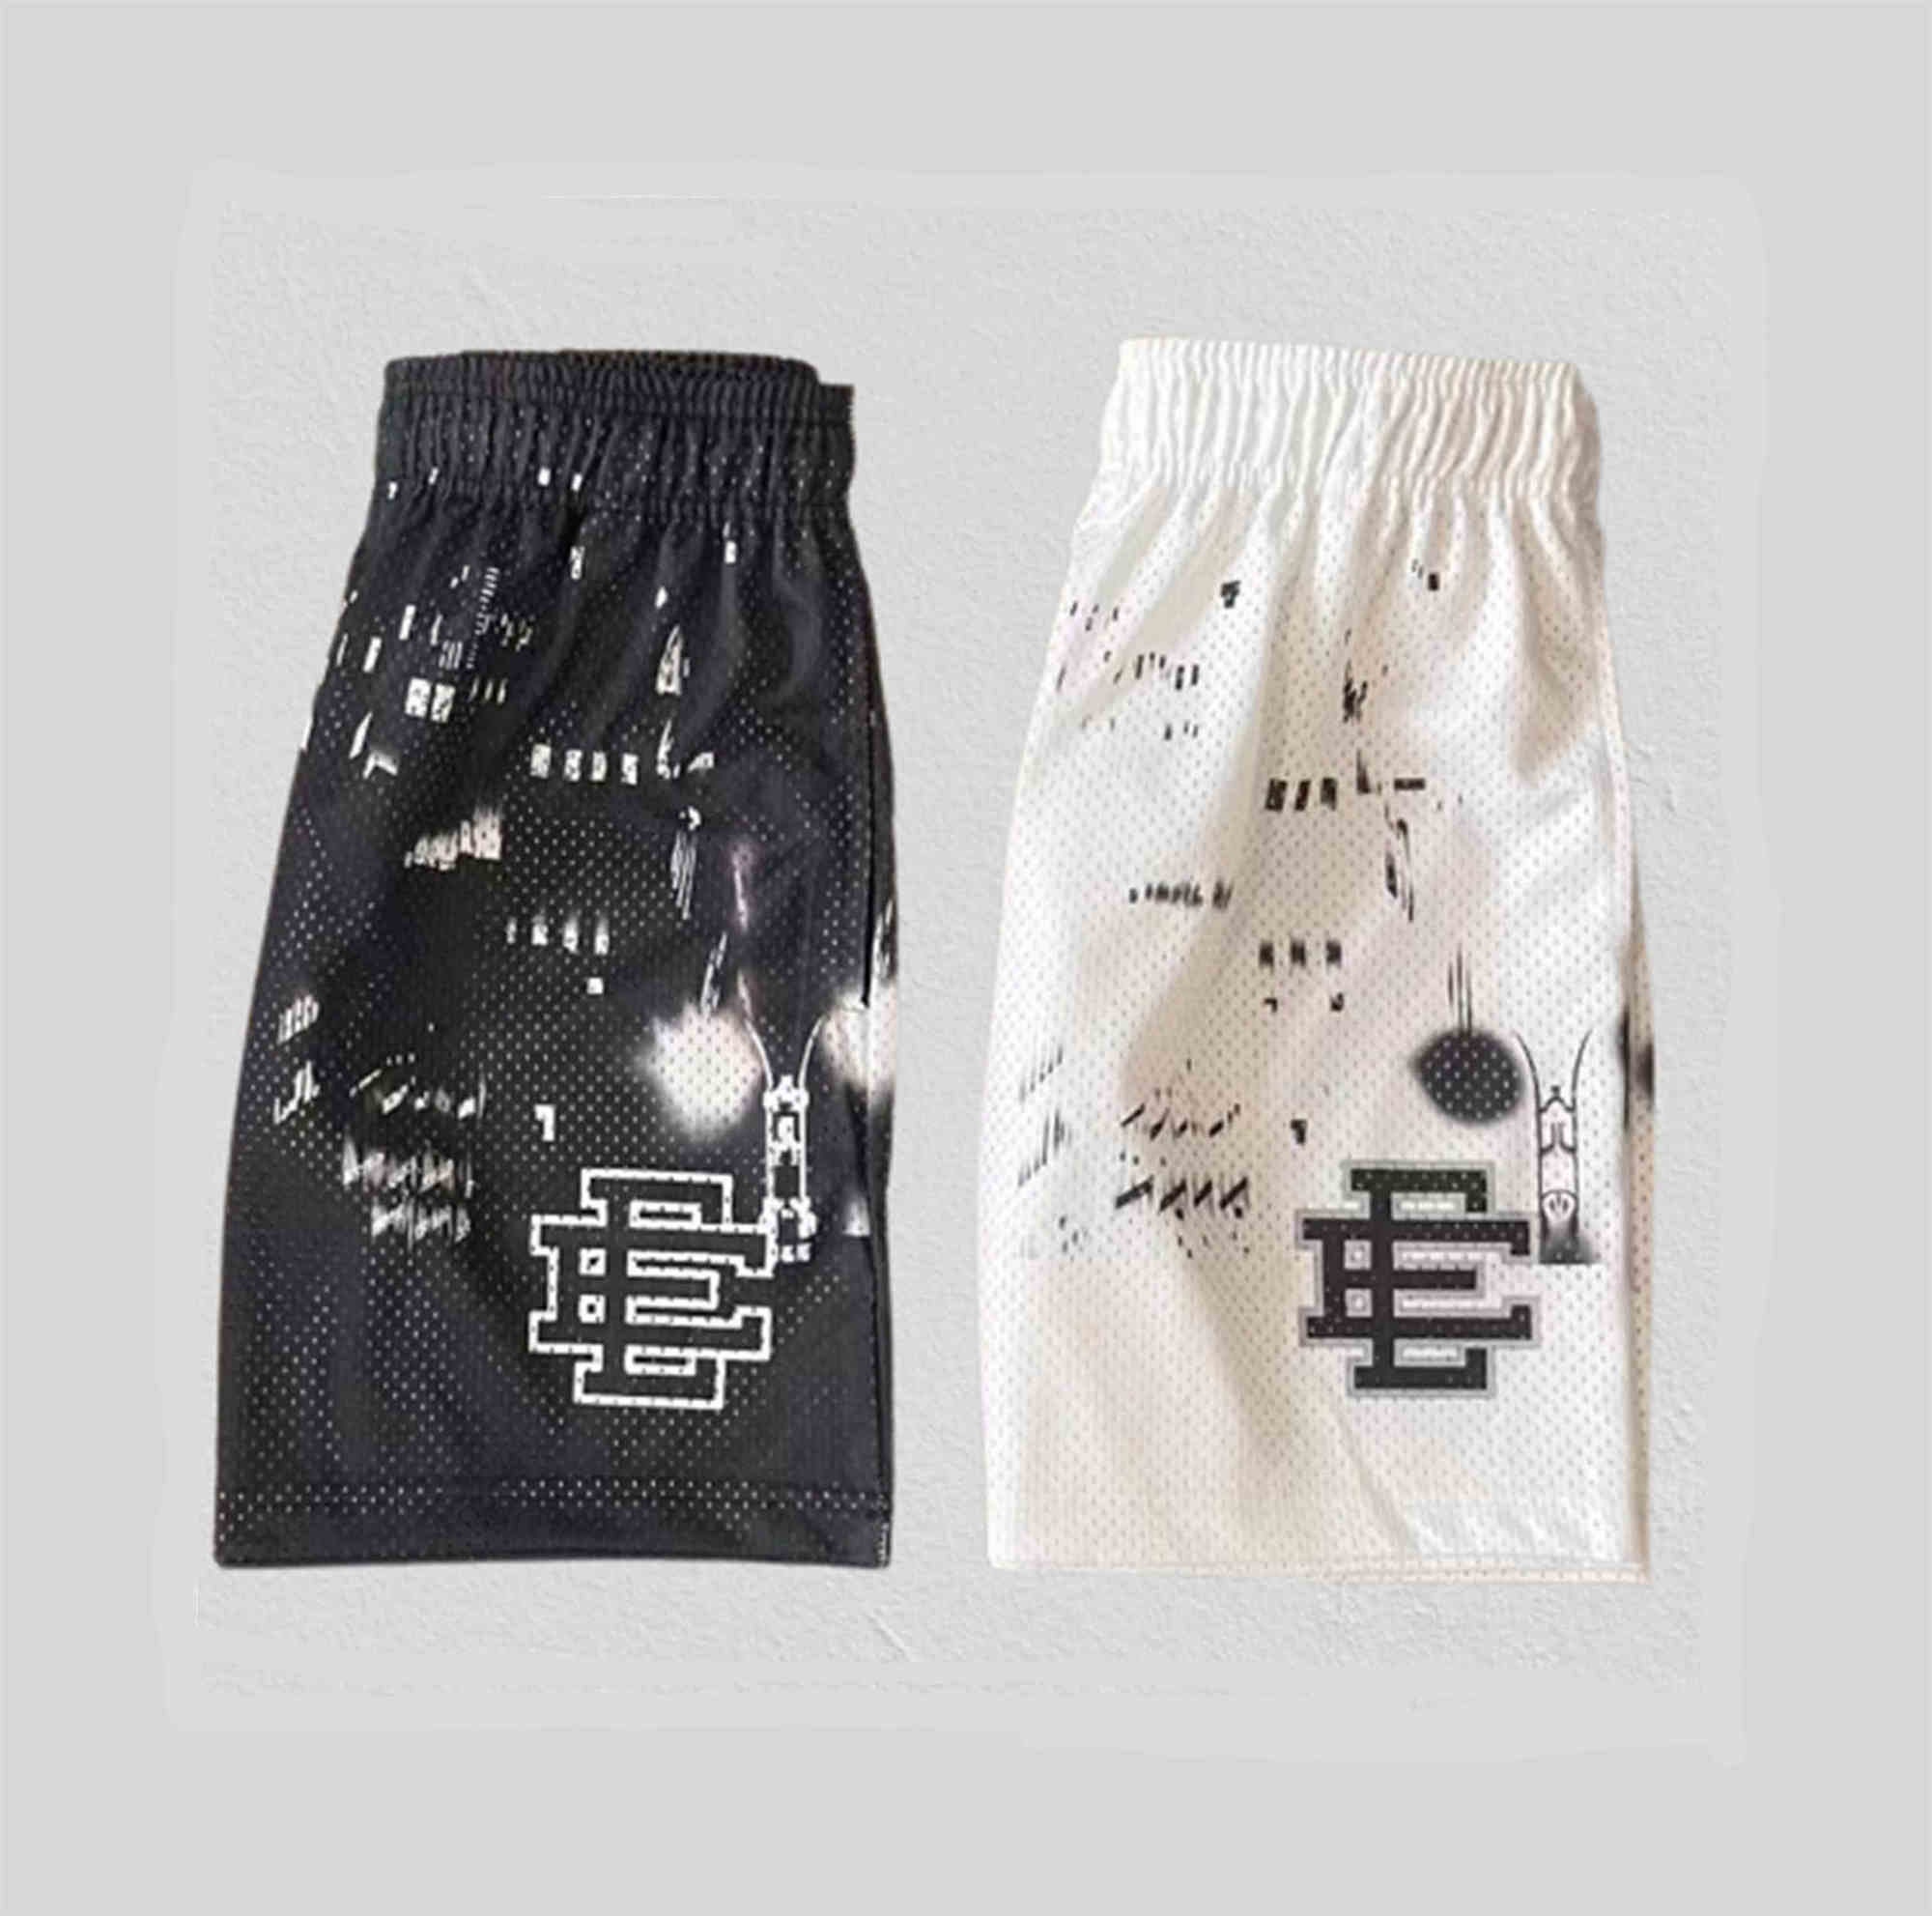 Wholesale Custom Logo Fashion Men Unisex Eric Emanuel Mesh Shorts  Breathable Fashion Sweatpants Summer Beach Ee Basic Shorts - China Shorts  and Mesh Shorts price